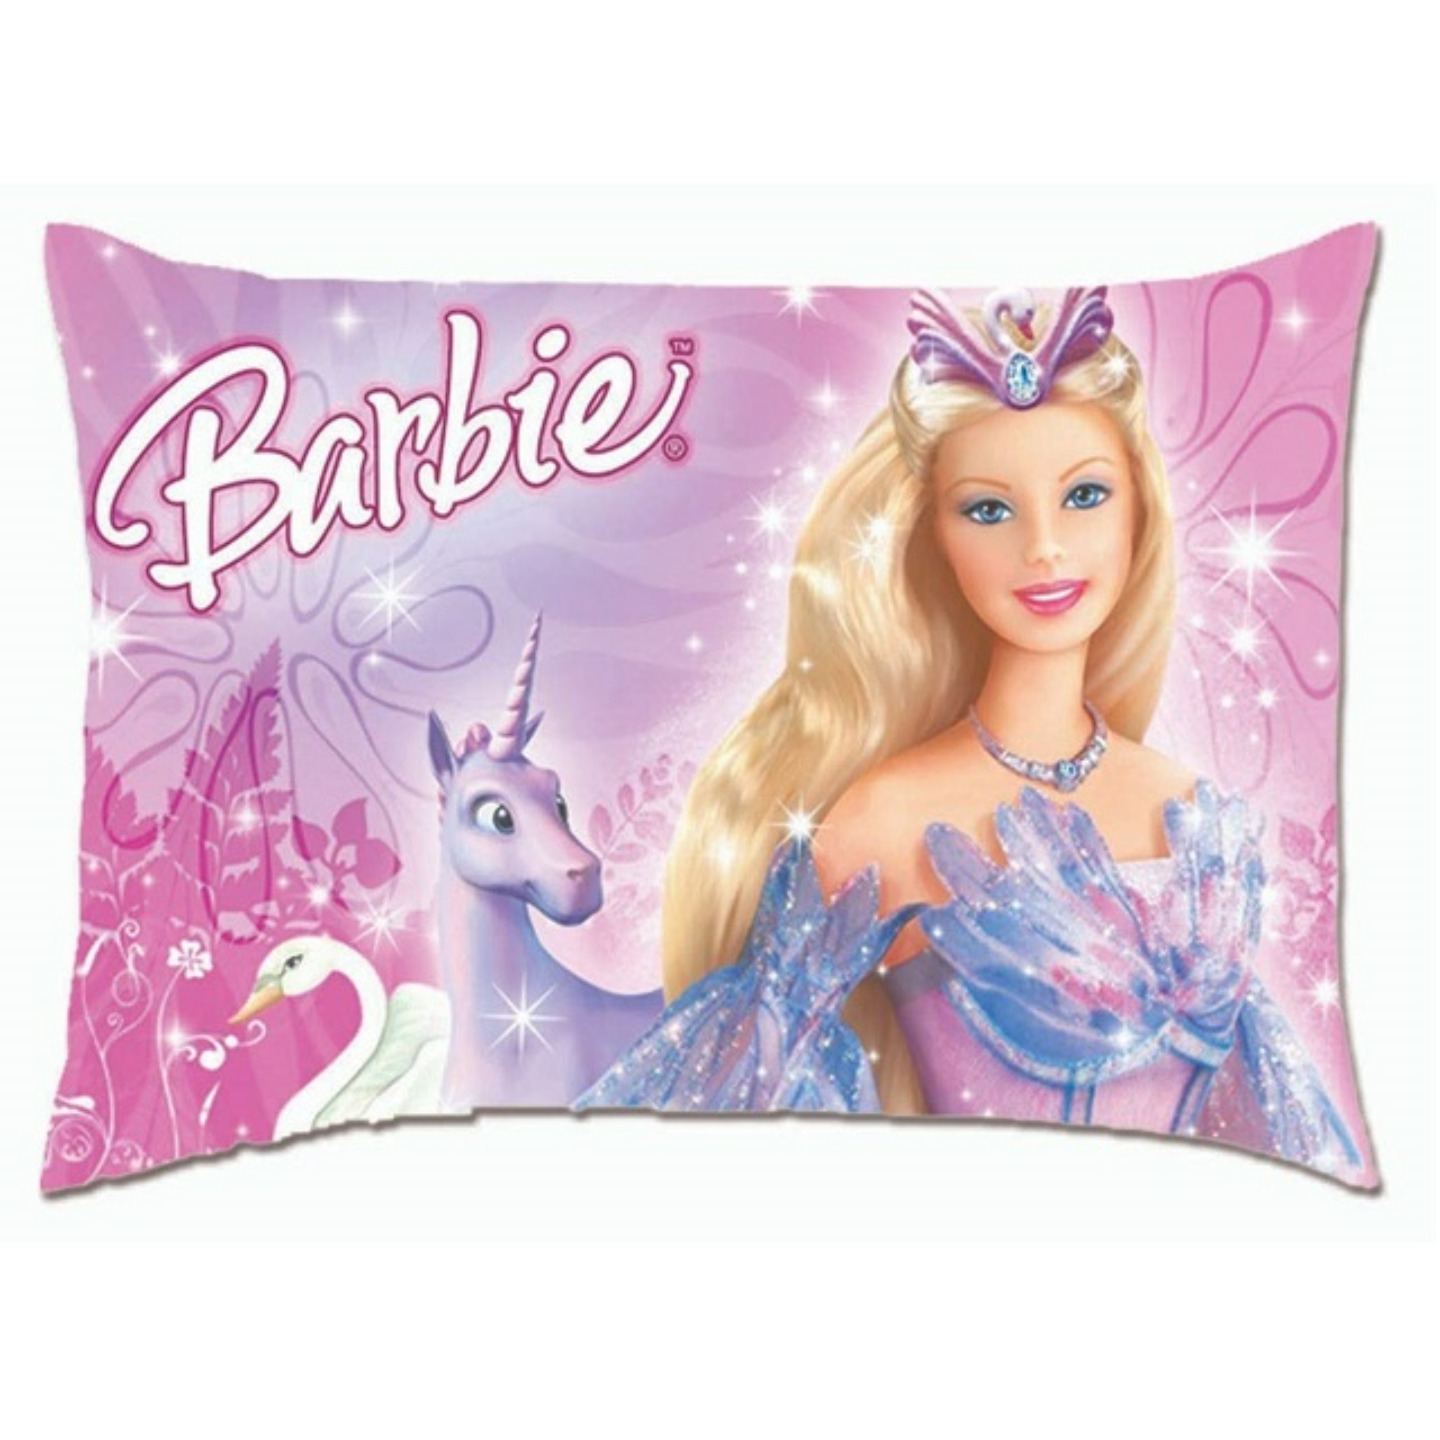 Barbie Digital Print Kids Pillow 12X18 Inch